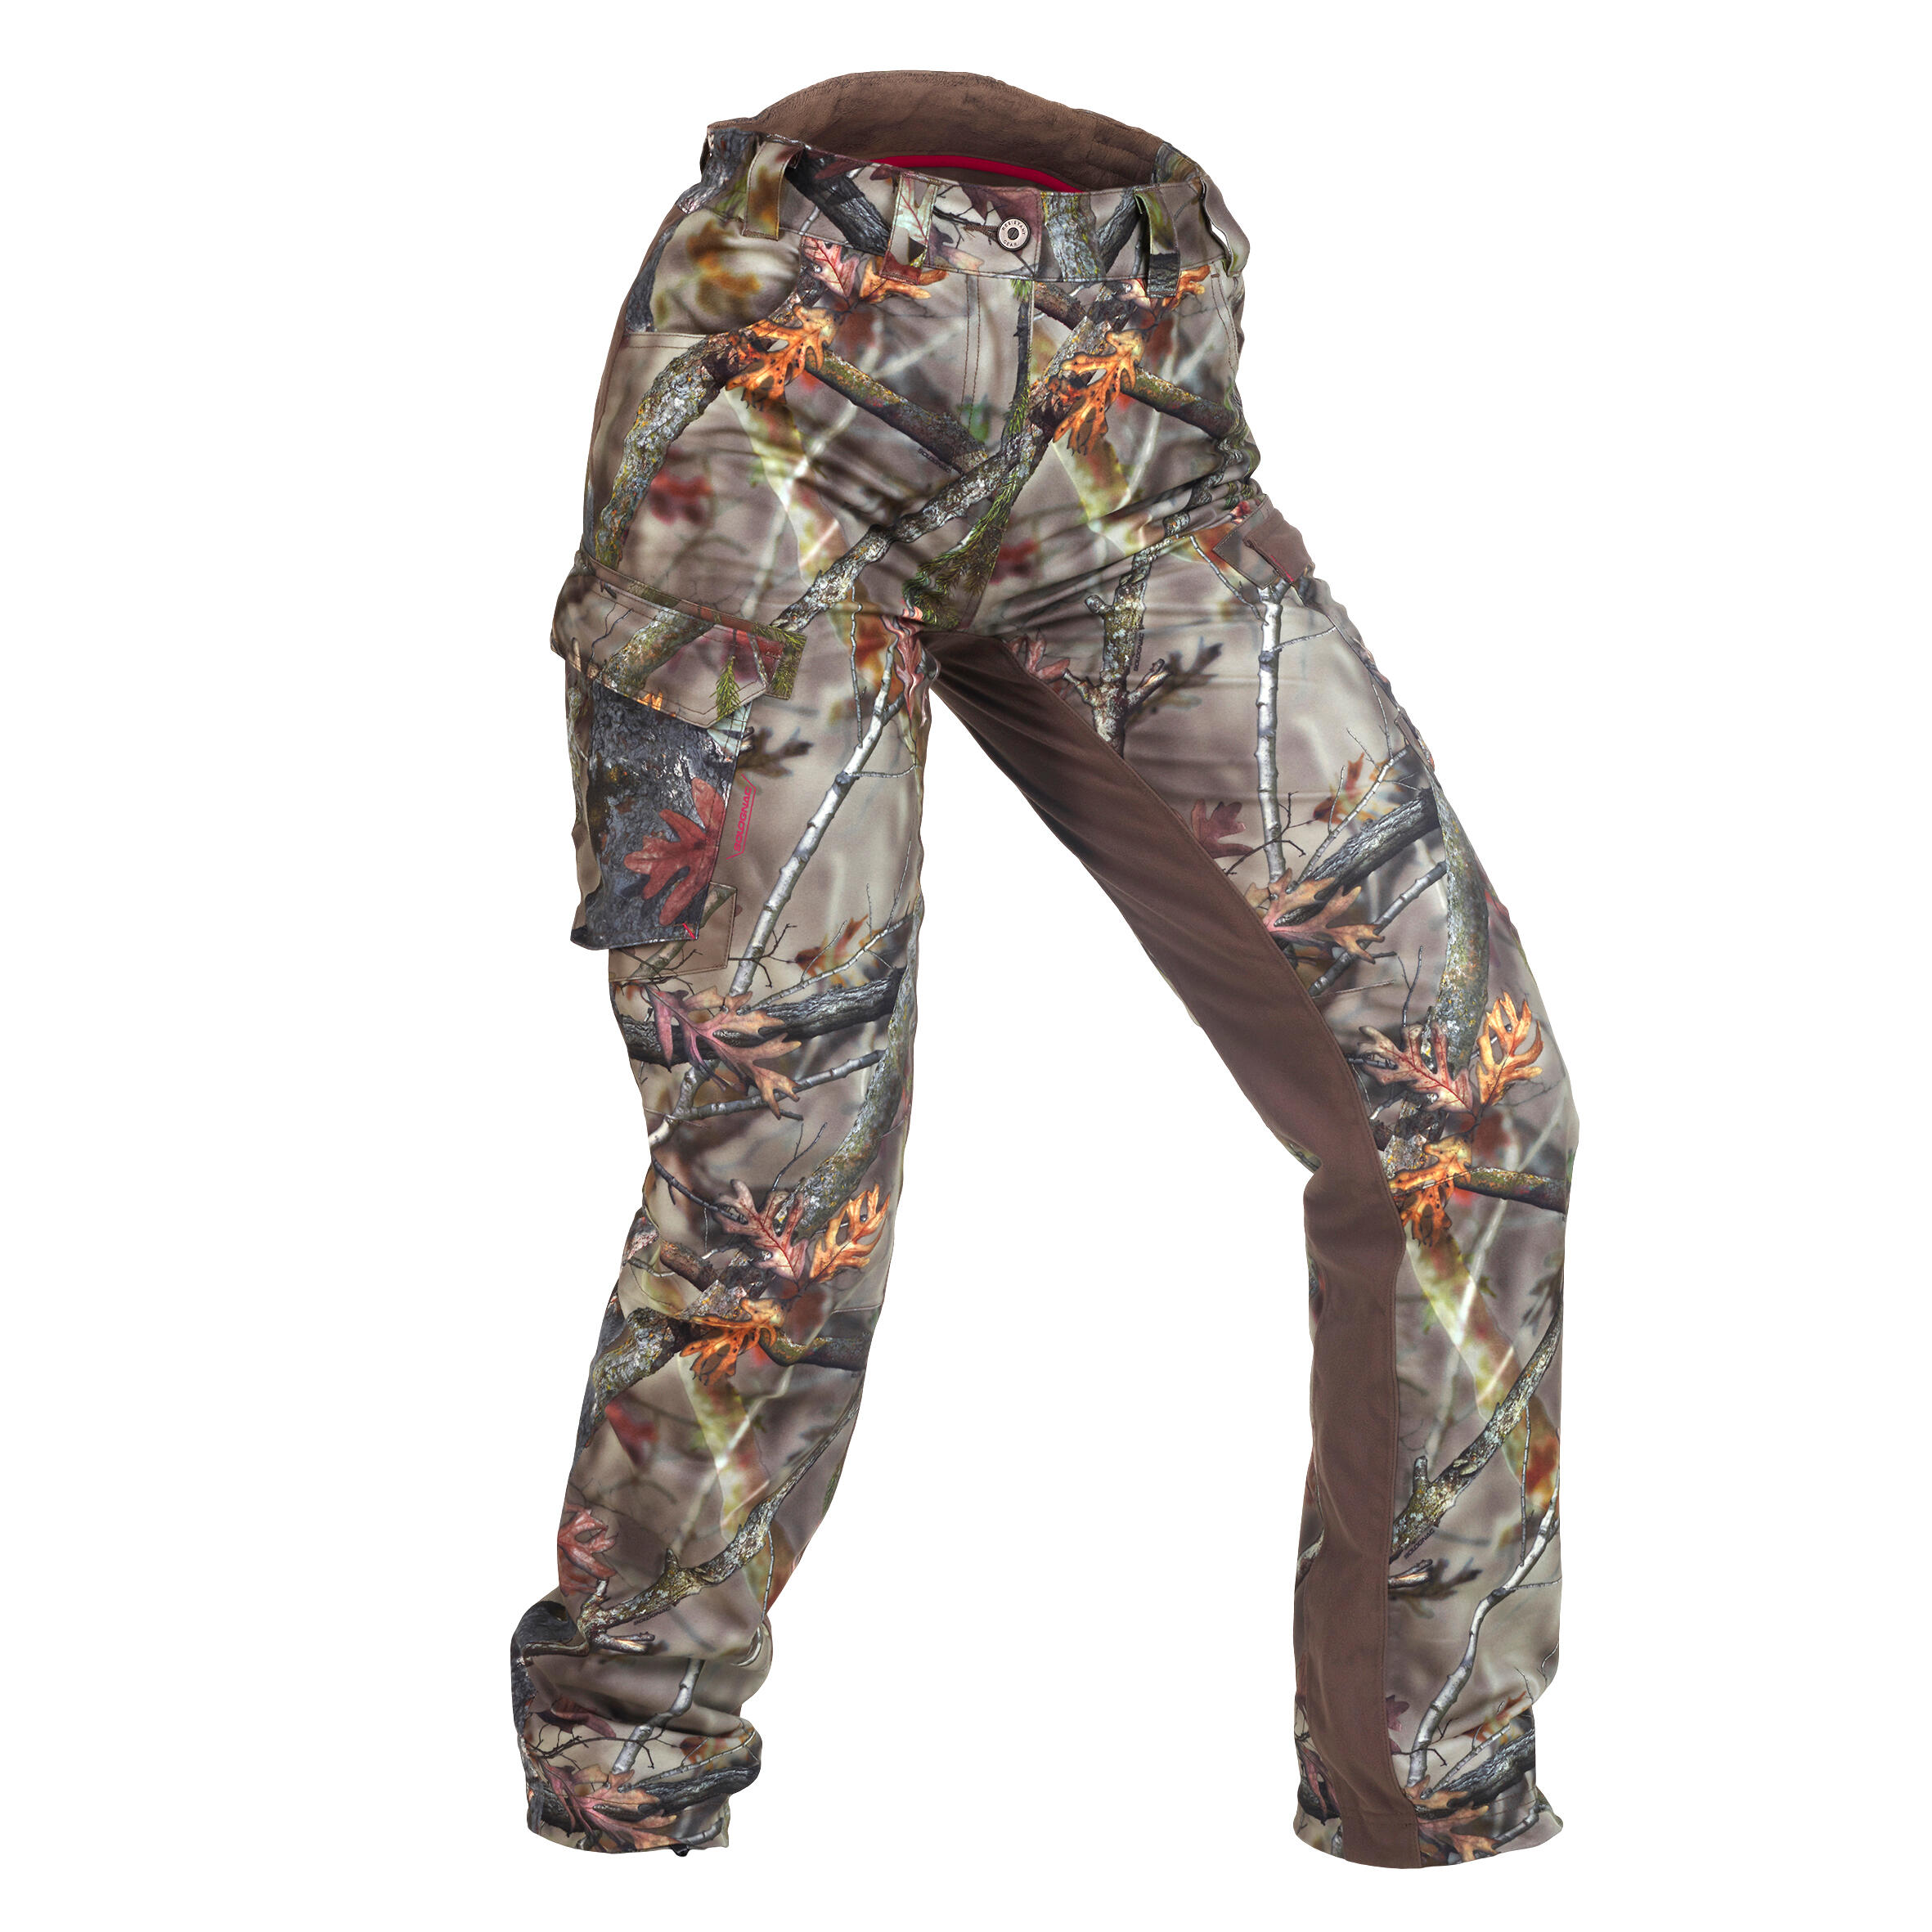 Pantalon 500 impermeabil călduros Camuflaj Damă La Oferta Online decathlon imagine La Oferta Online